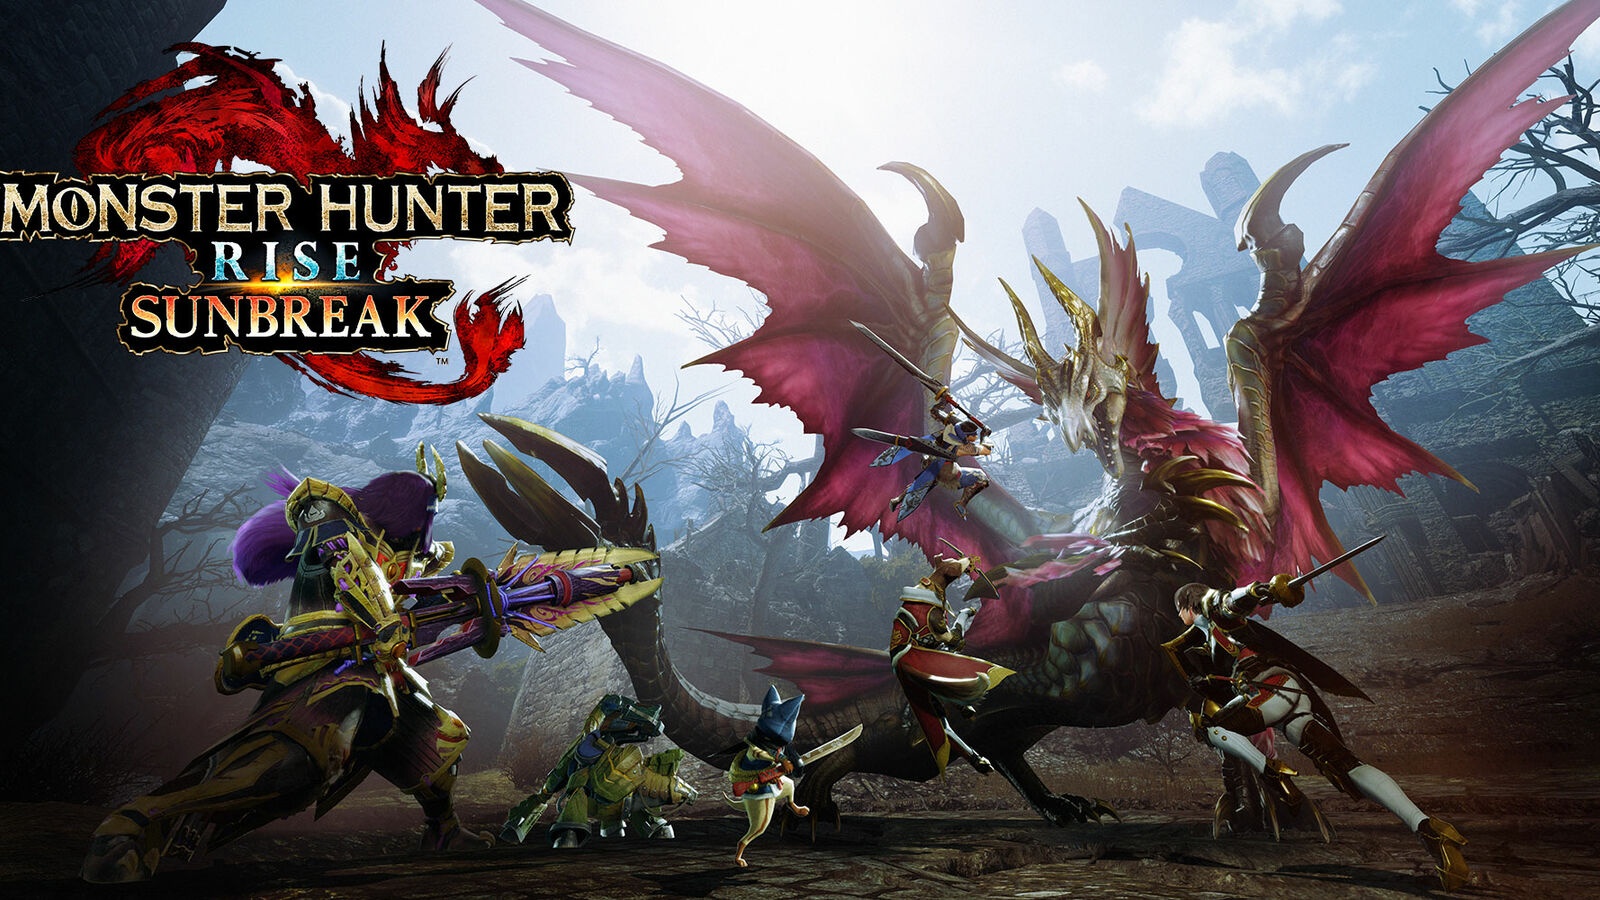 Hunter Monster Sunbreak review Rise: